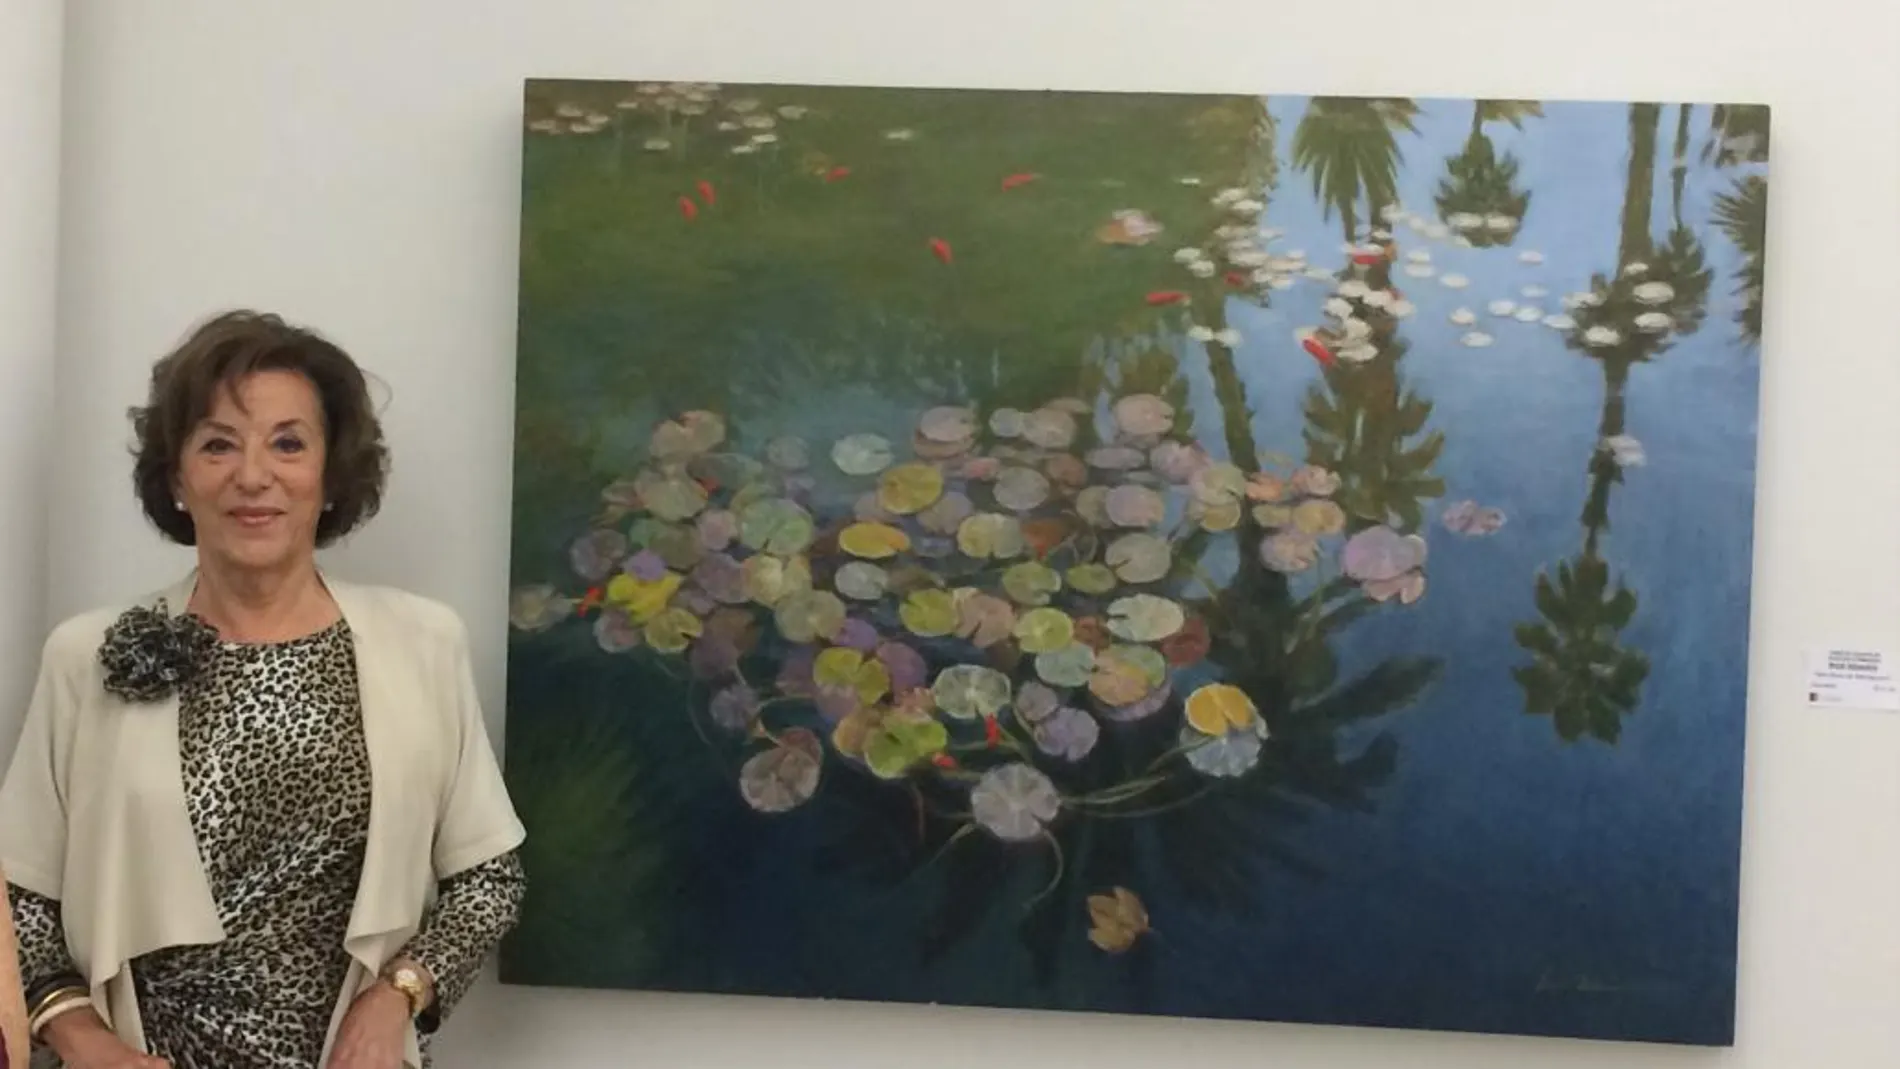 La pintora Irene Iribarren, posando junto a su obra premiada «Estanque de nenúfares en Marraquech» luciendo el Diploma acreditativo